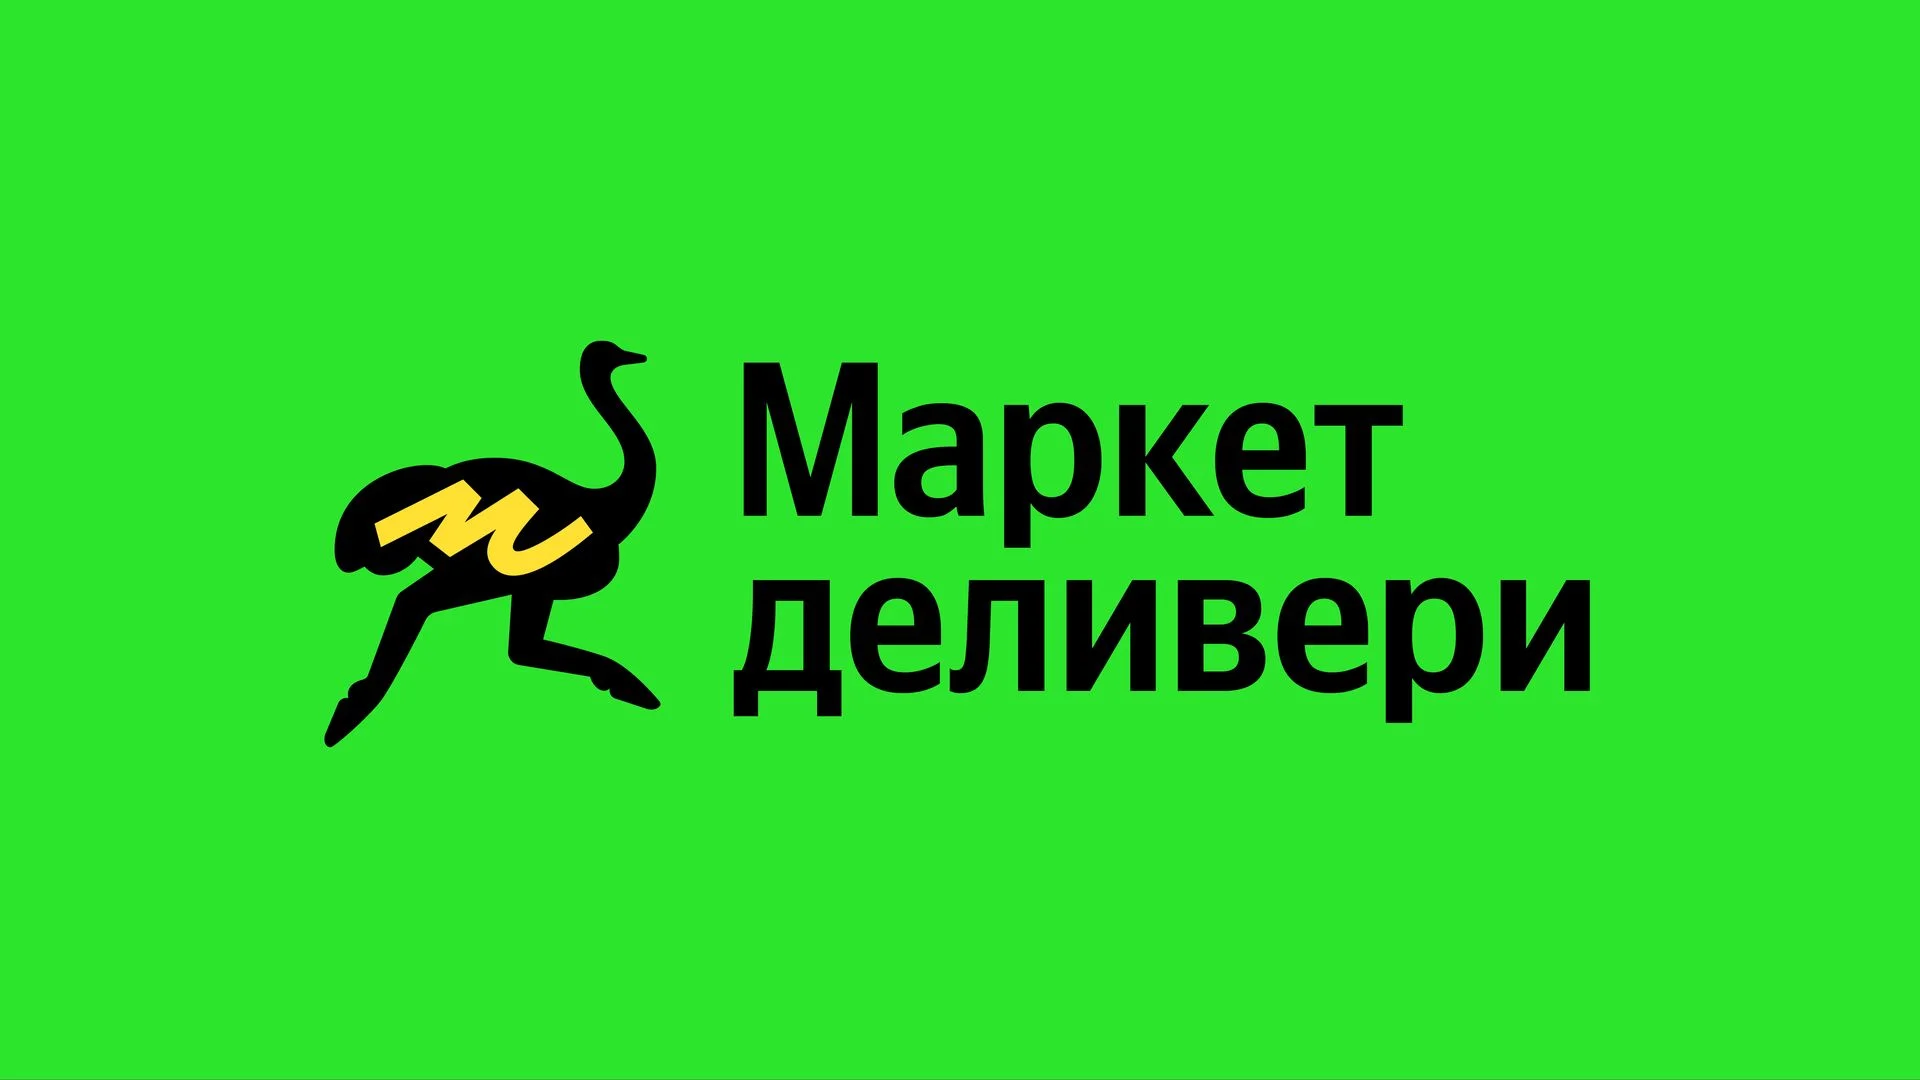 «Яндекс» показал новый логотип переименованного Delivery Club - фото 1